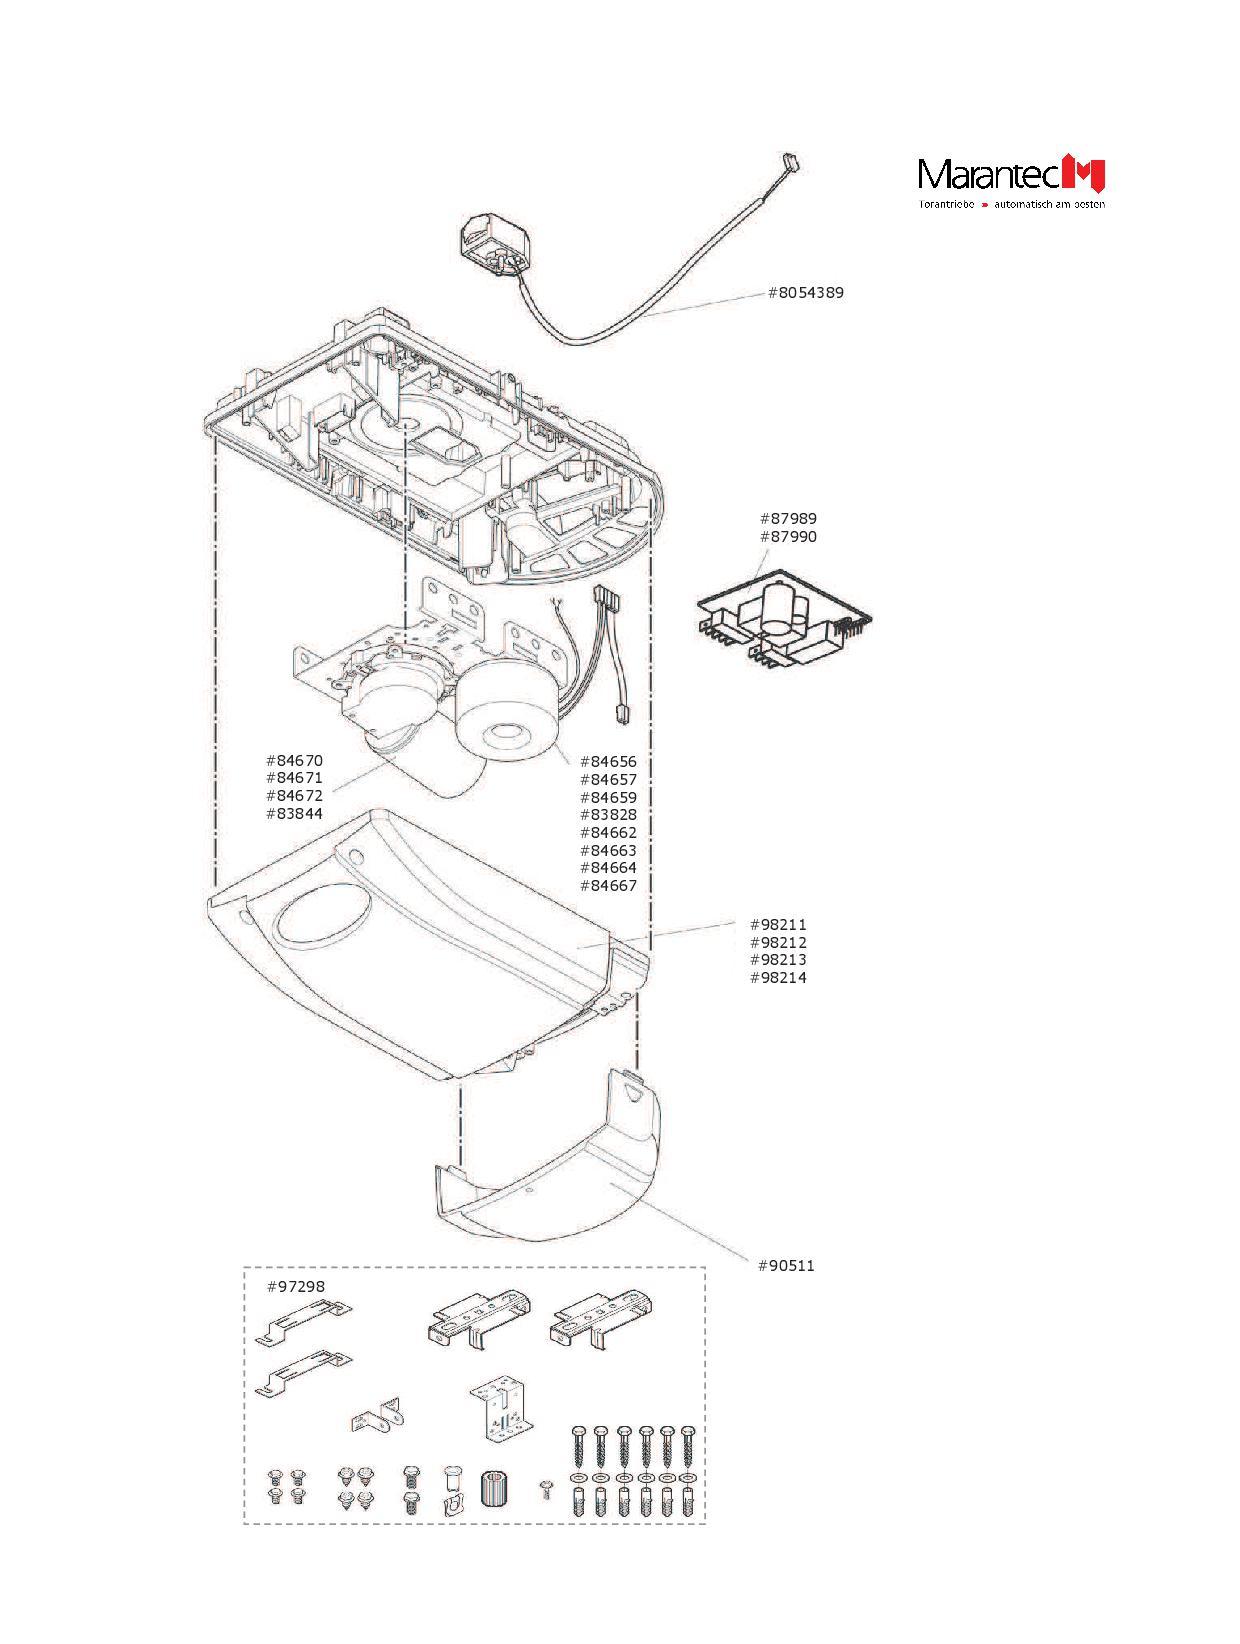 Marantec Gleichstrommotor, Artikel Nr. 84670 für den Garagentorantrieb Comfort 220.